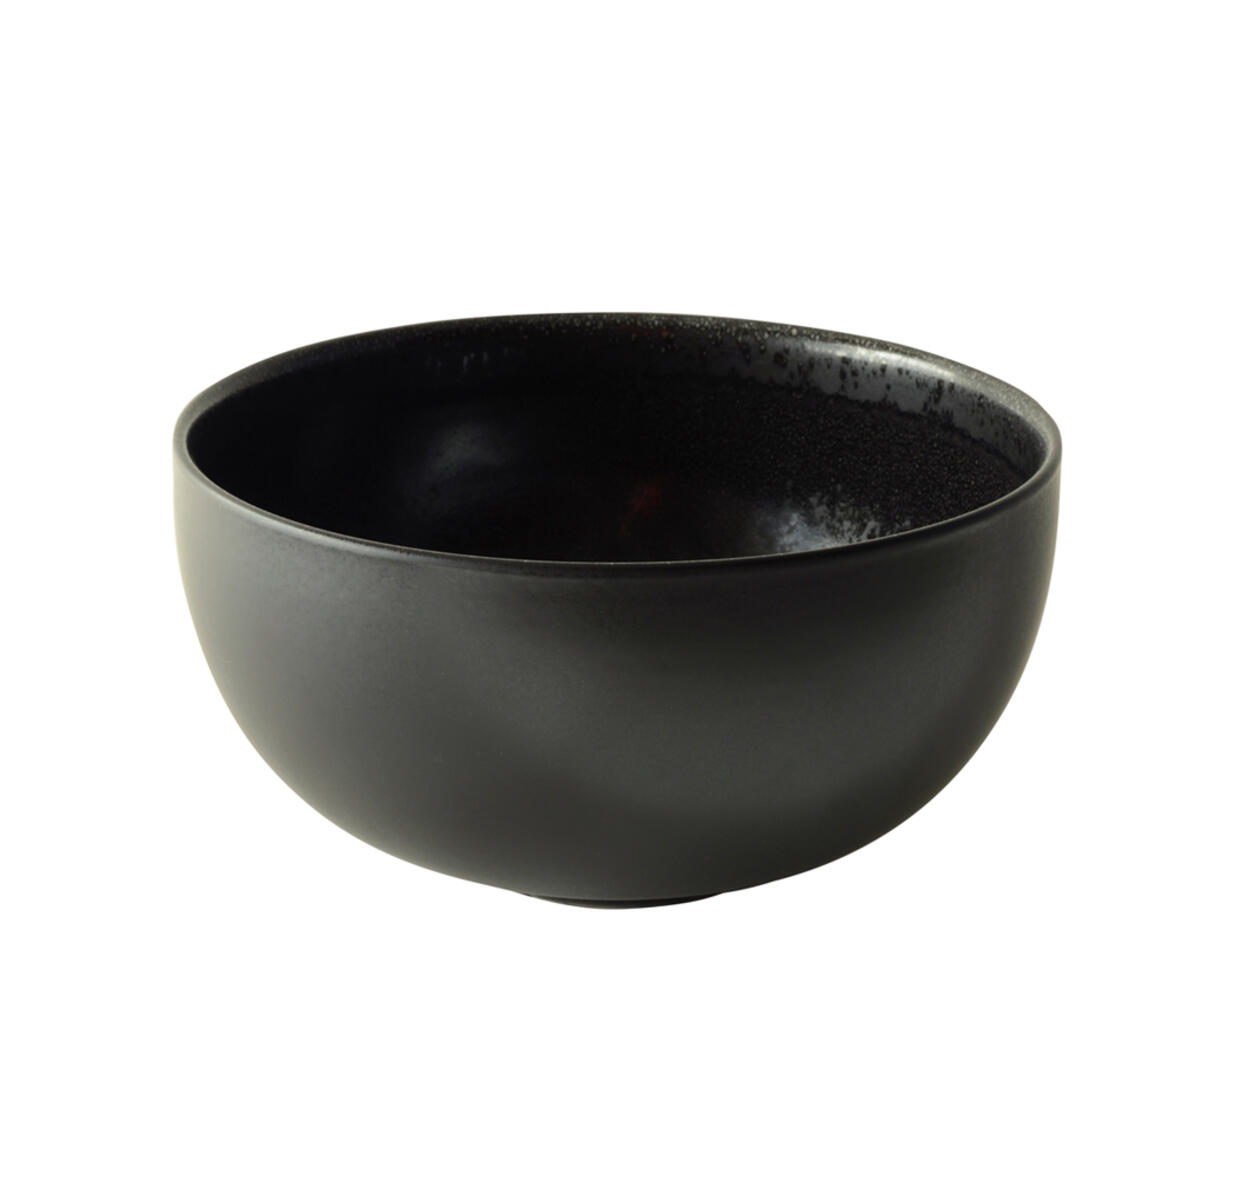 serving bowl s tourron céleste ceramic manufacturer